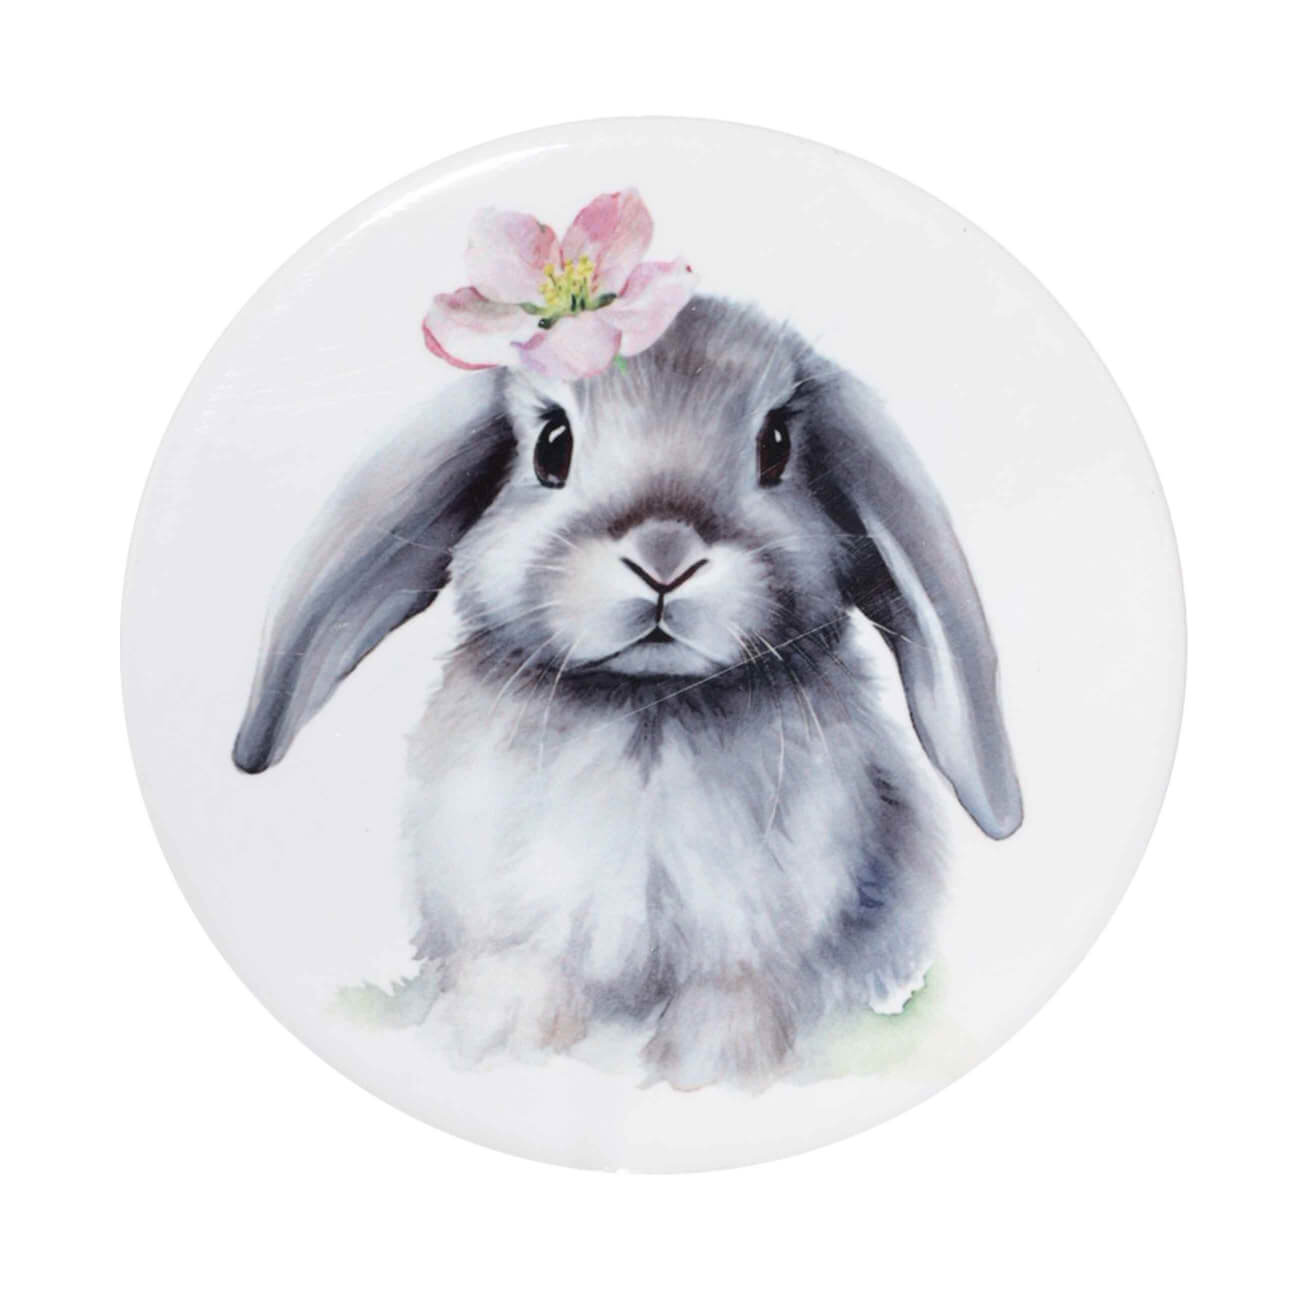 подставка для яйца 6 см керамика белая кролик в ах easter Подставка под кружку, 11 см, керамика/пробка, круглая, белая, Кролик с цветком, Pure Easter